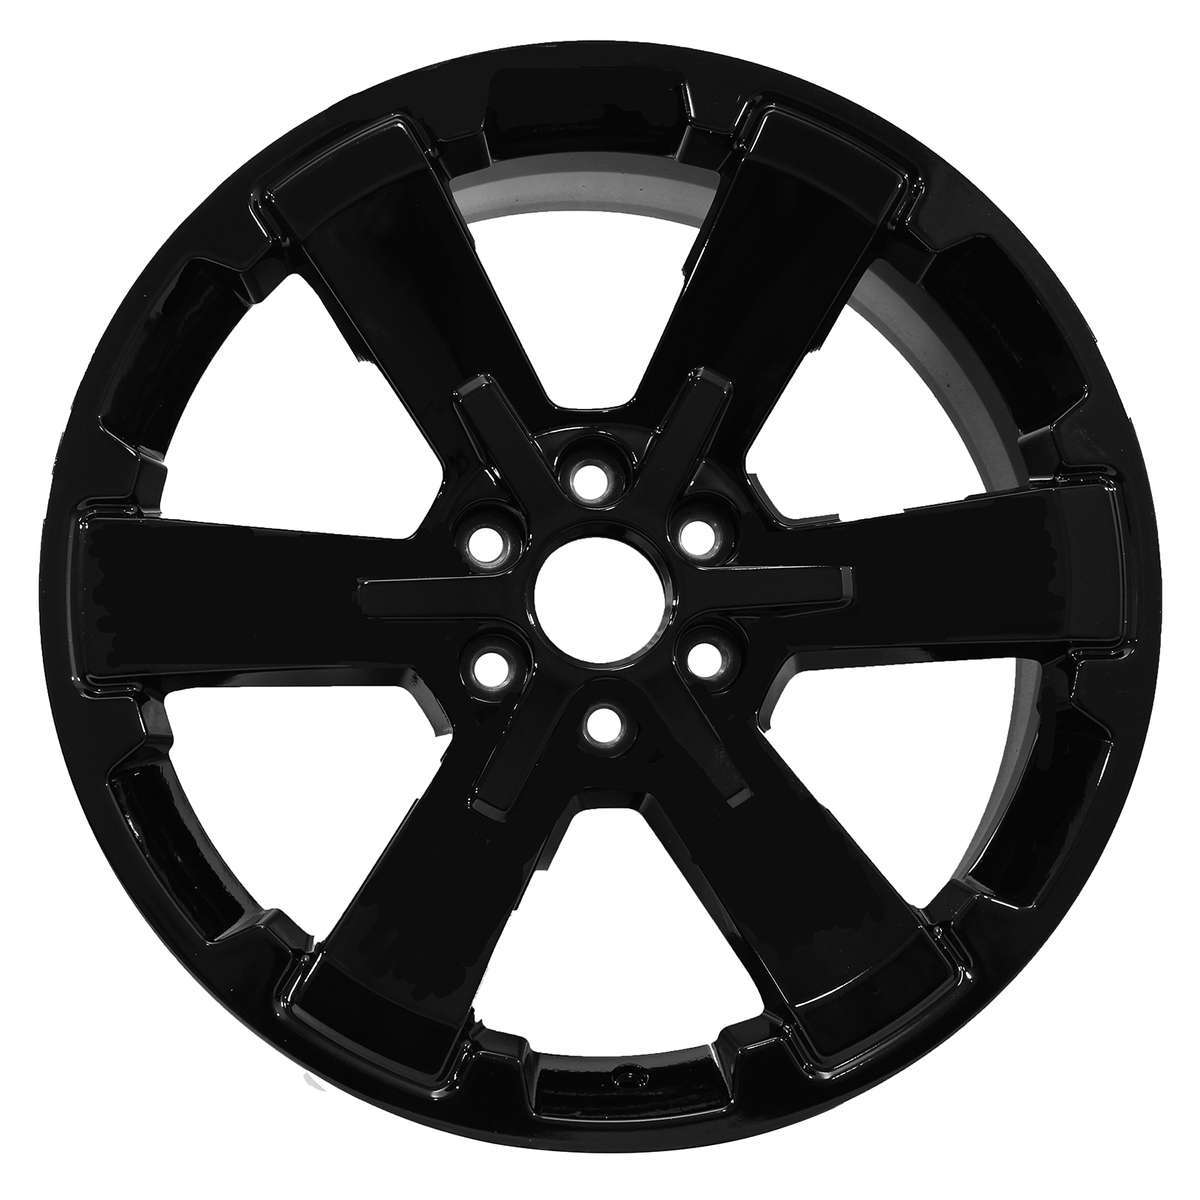 2014 Chevrolet Silverado 1500 22" OEM Wheel Rim W5662B